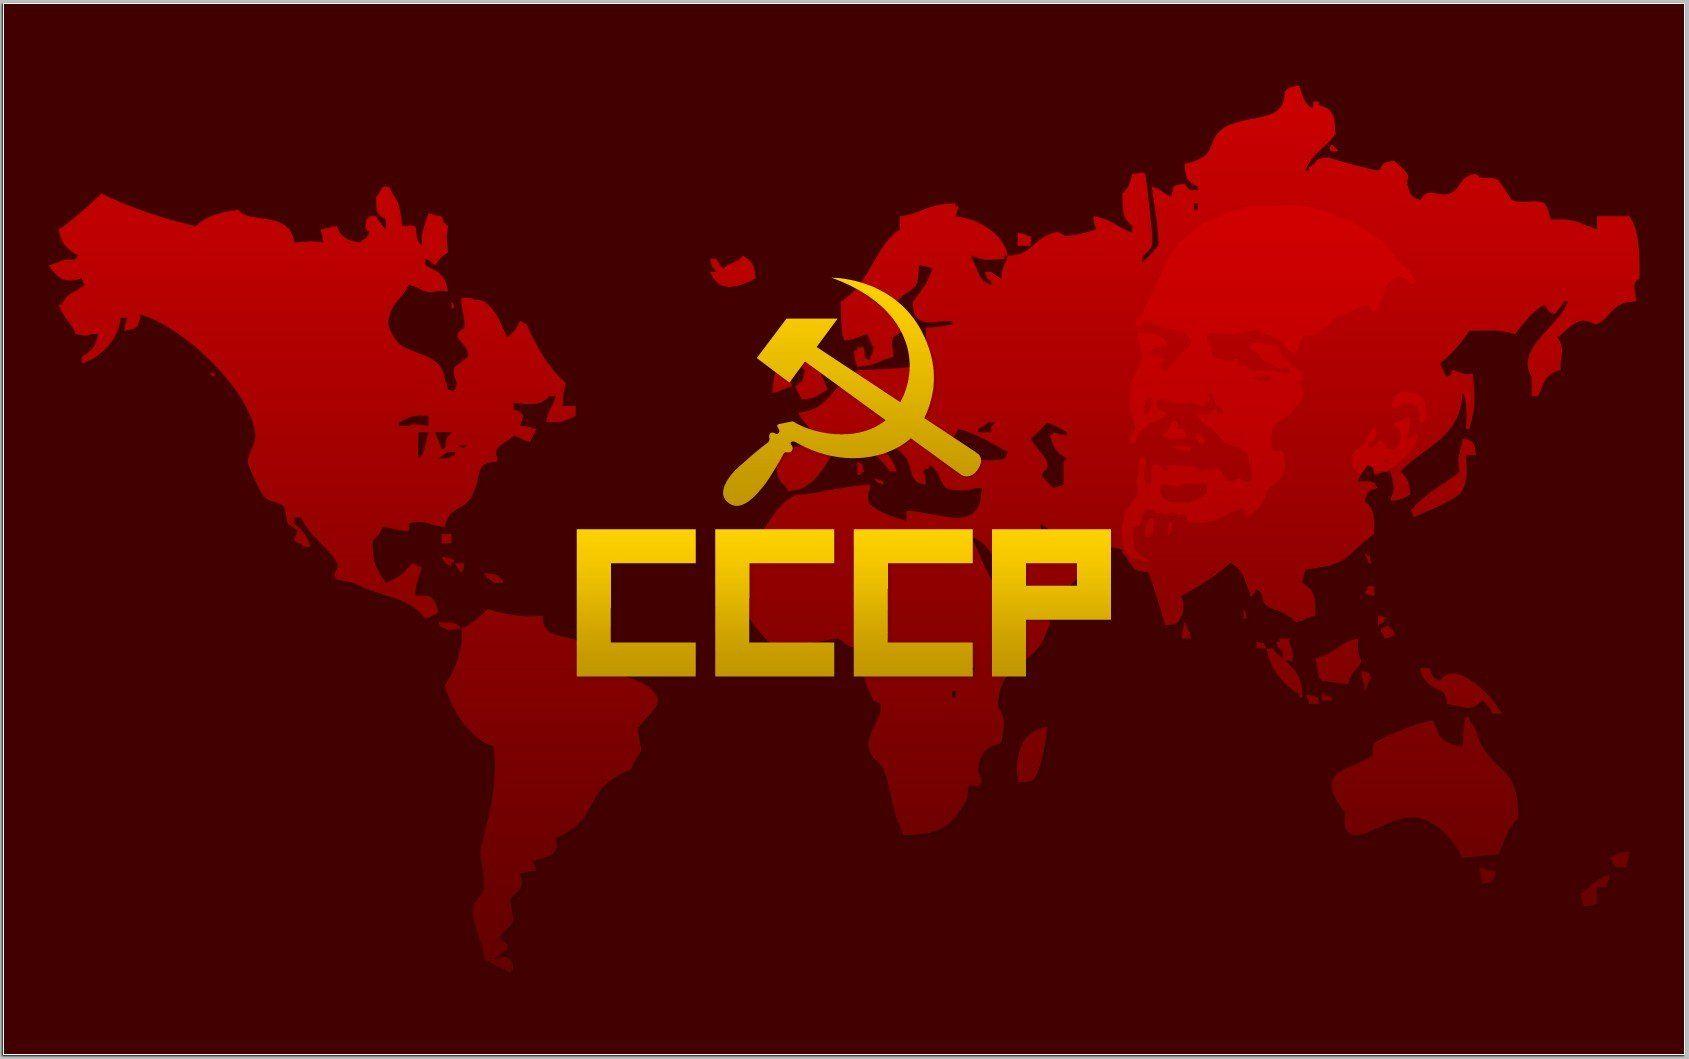 communist wallpaper download free